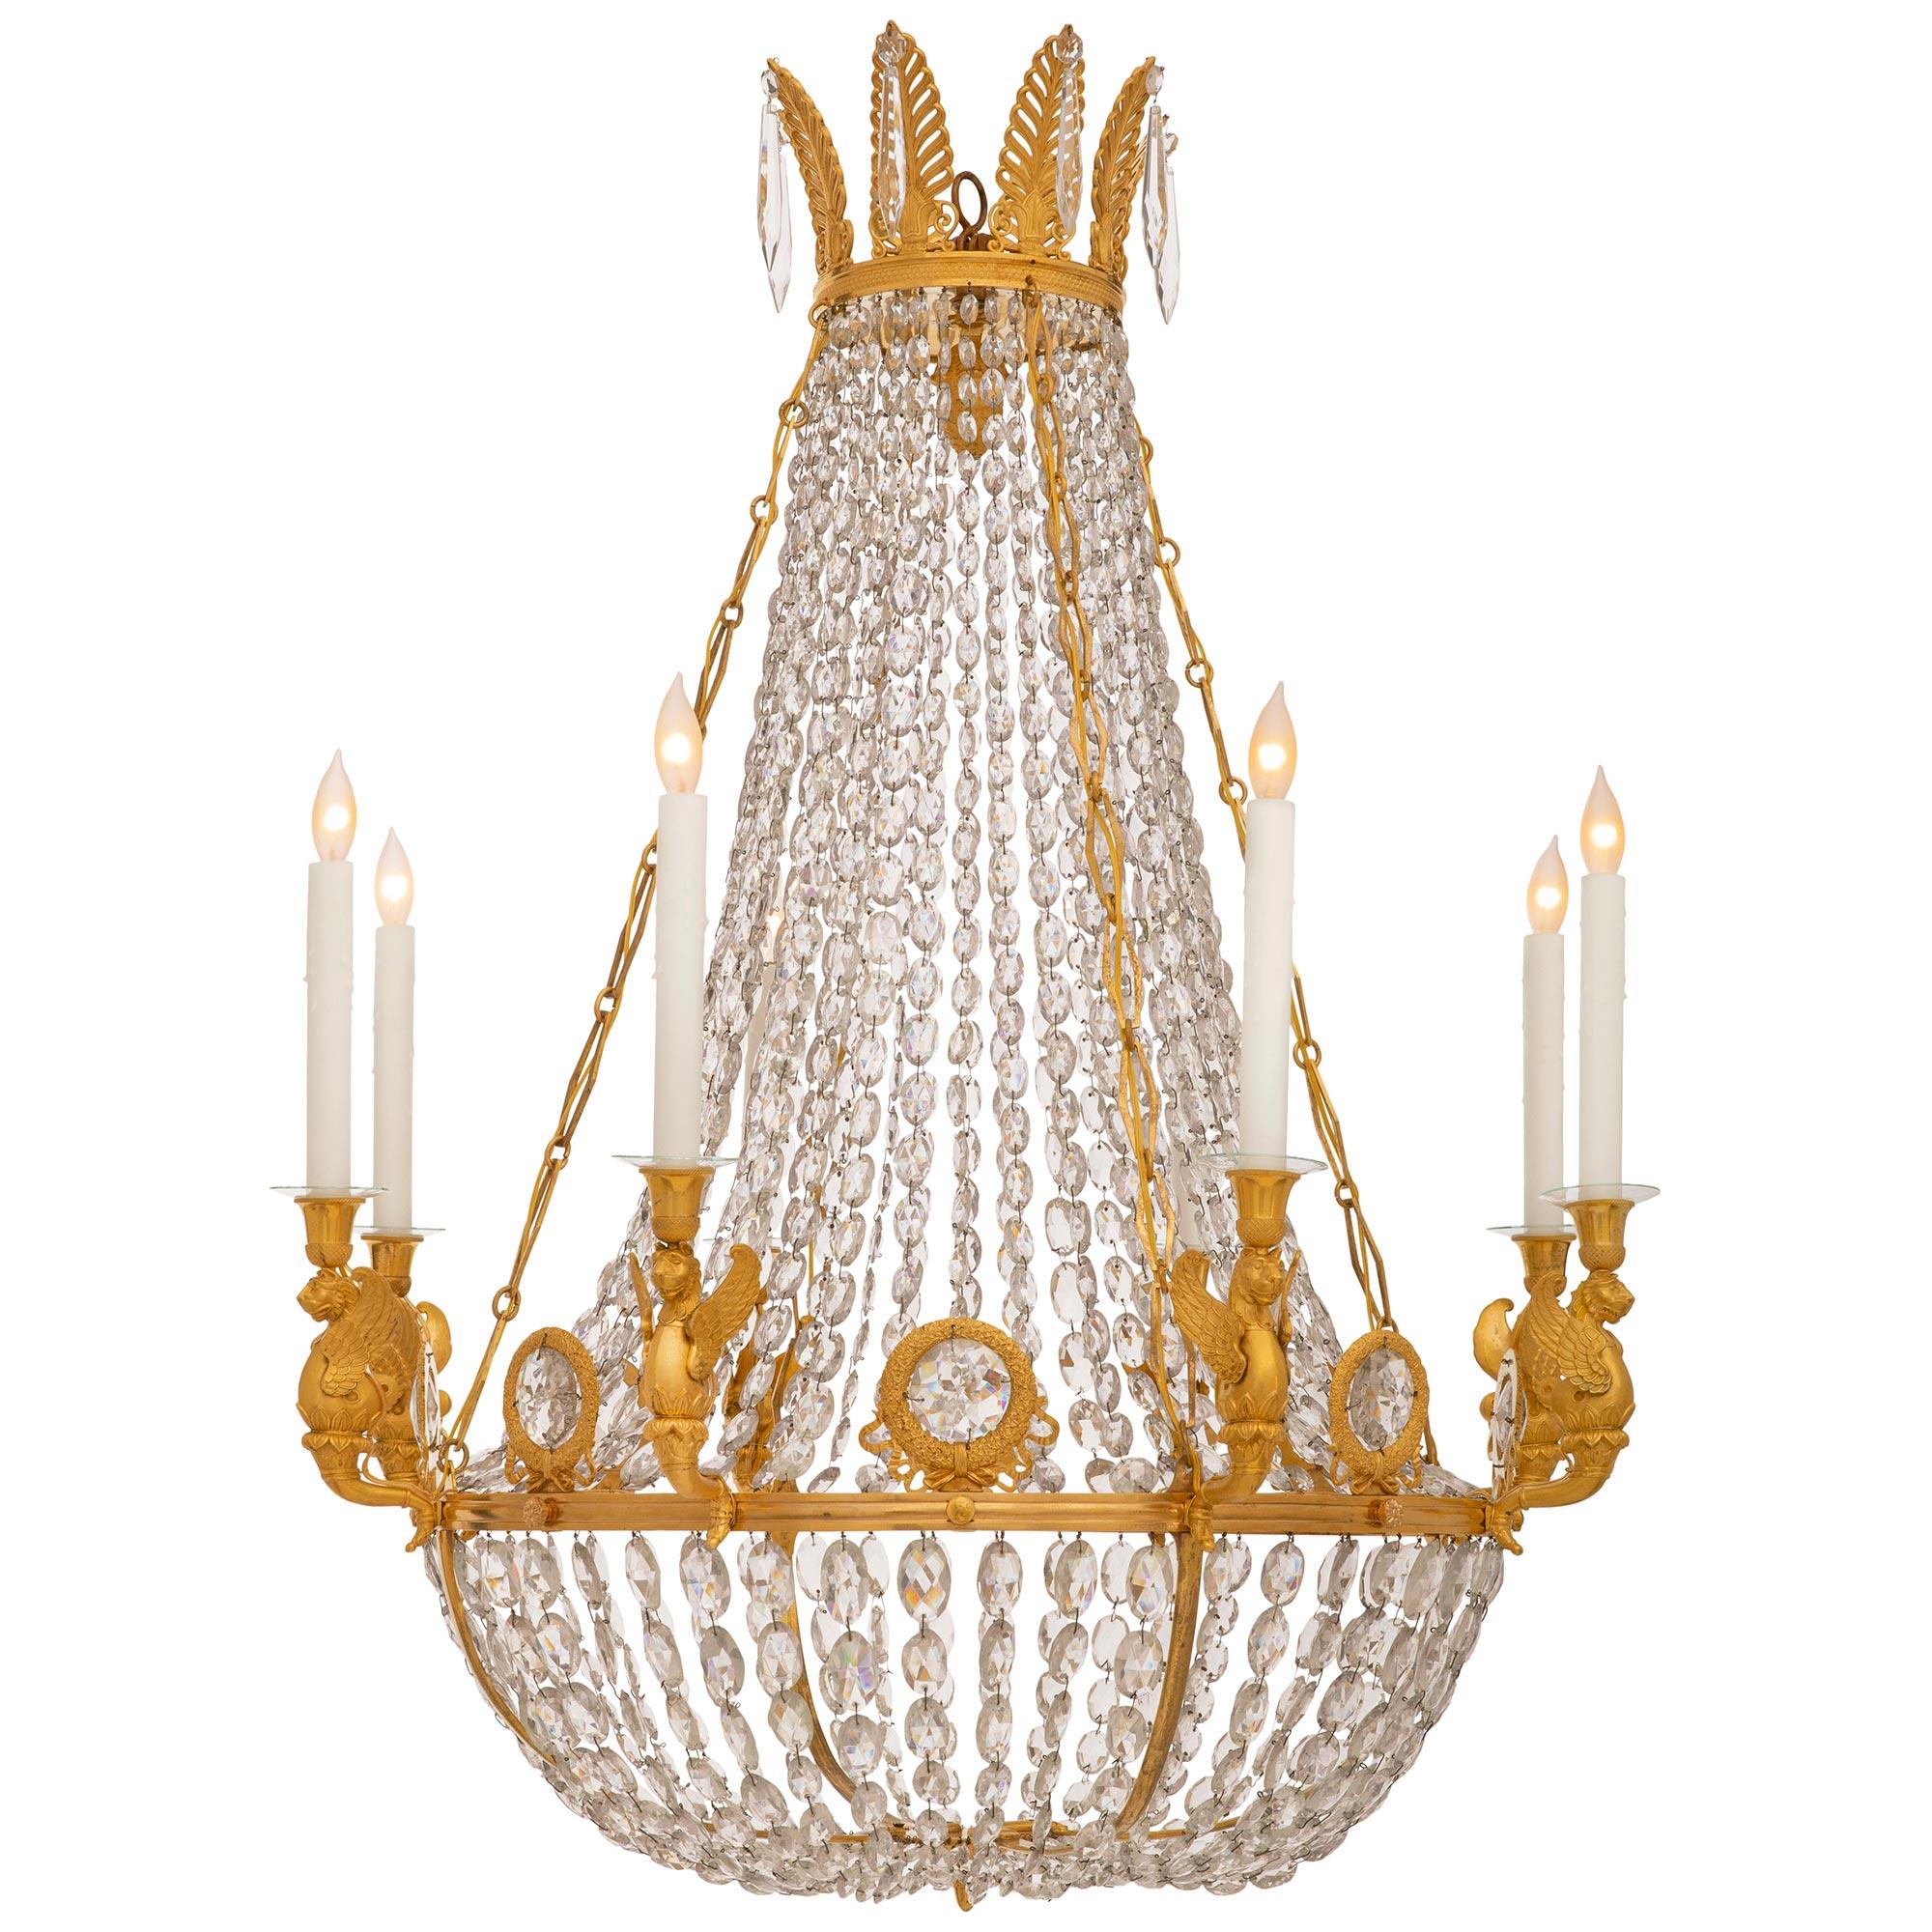 Un superbe et très élégant lustre en bronze doré et cristal de Charles X du 19ème siècle. Cet impressionnant lustre à huit lumières est centré en bas par une réserve circulaire en bronze doré décorée de feuilles d'acanthe et de motifs en treillis